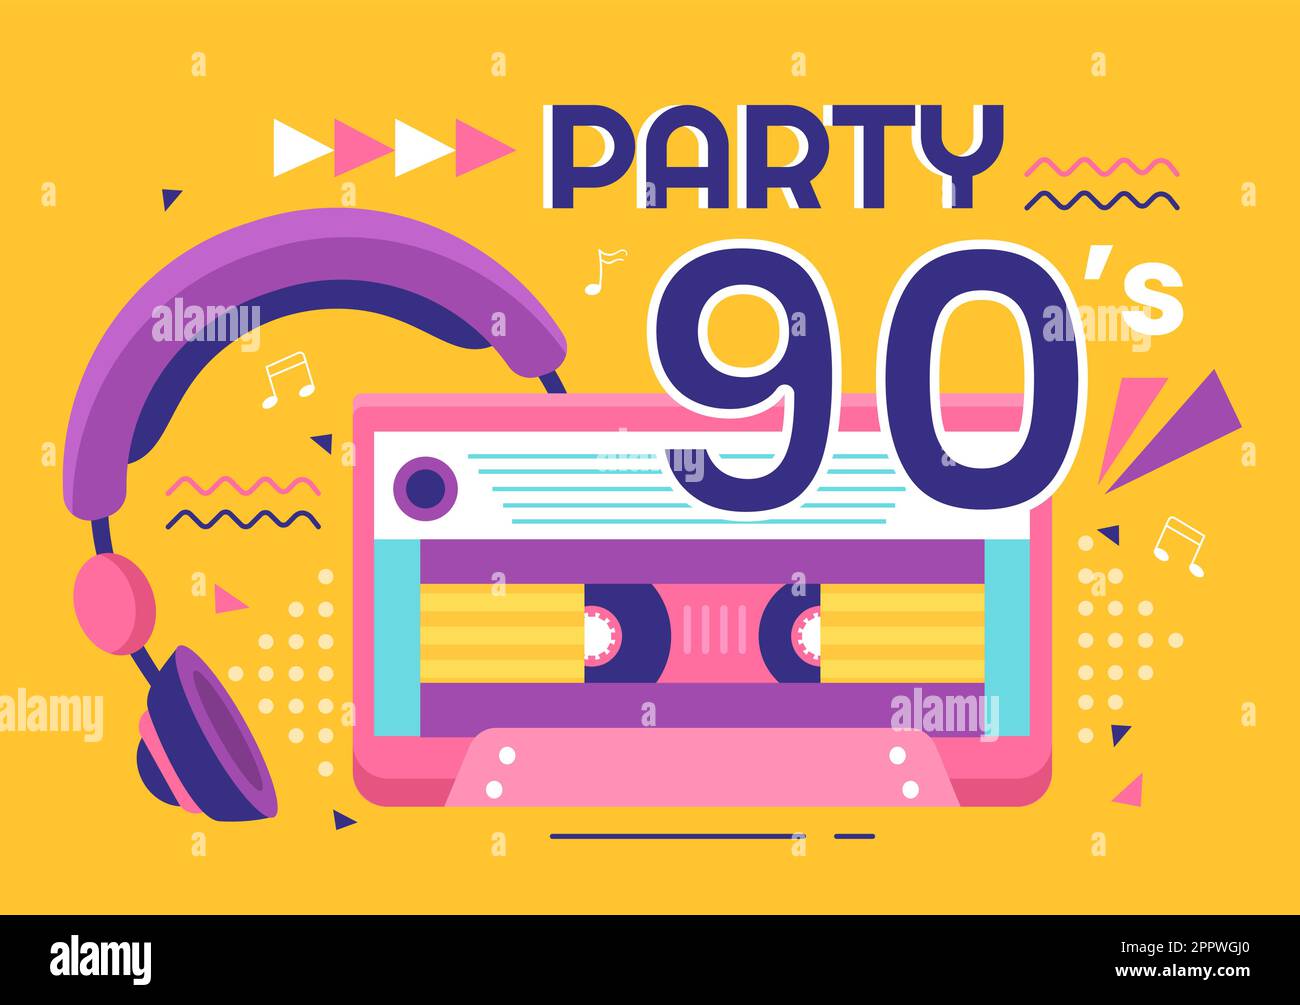 90s Retro Party Cartoon Ilustración de fondo con música de los años 90, deportivos, radio, tiempo de baile y cinta en el moderno diseño de estilo plano Ilustración del Vector